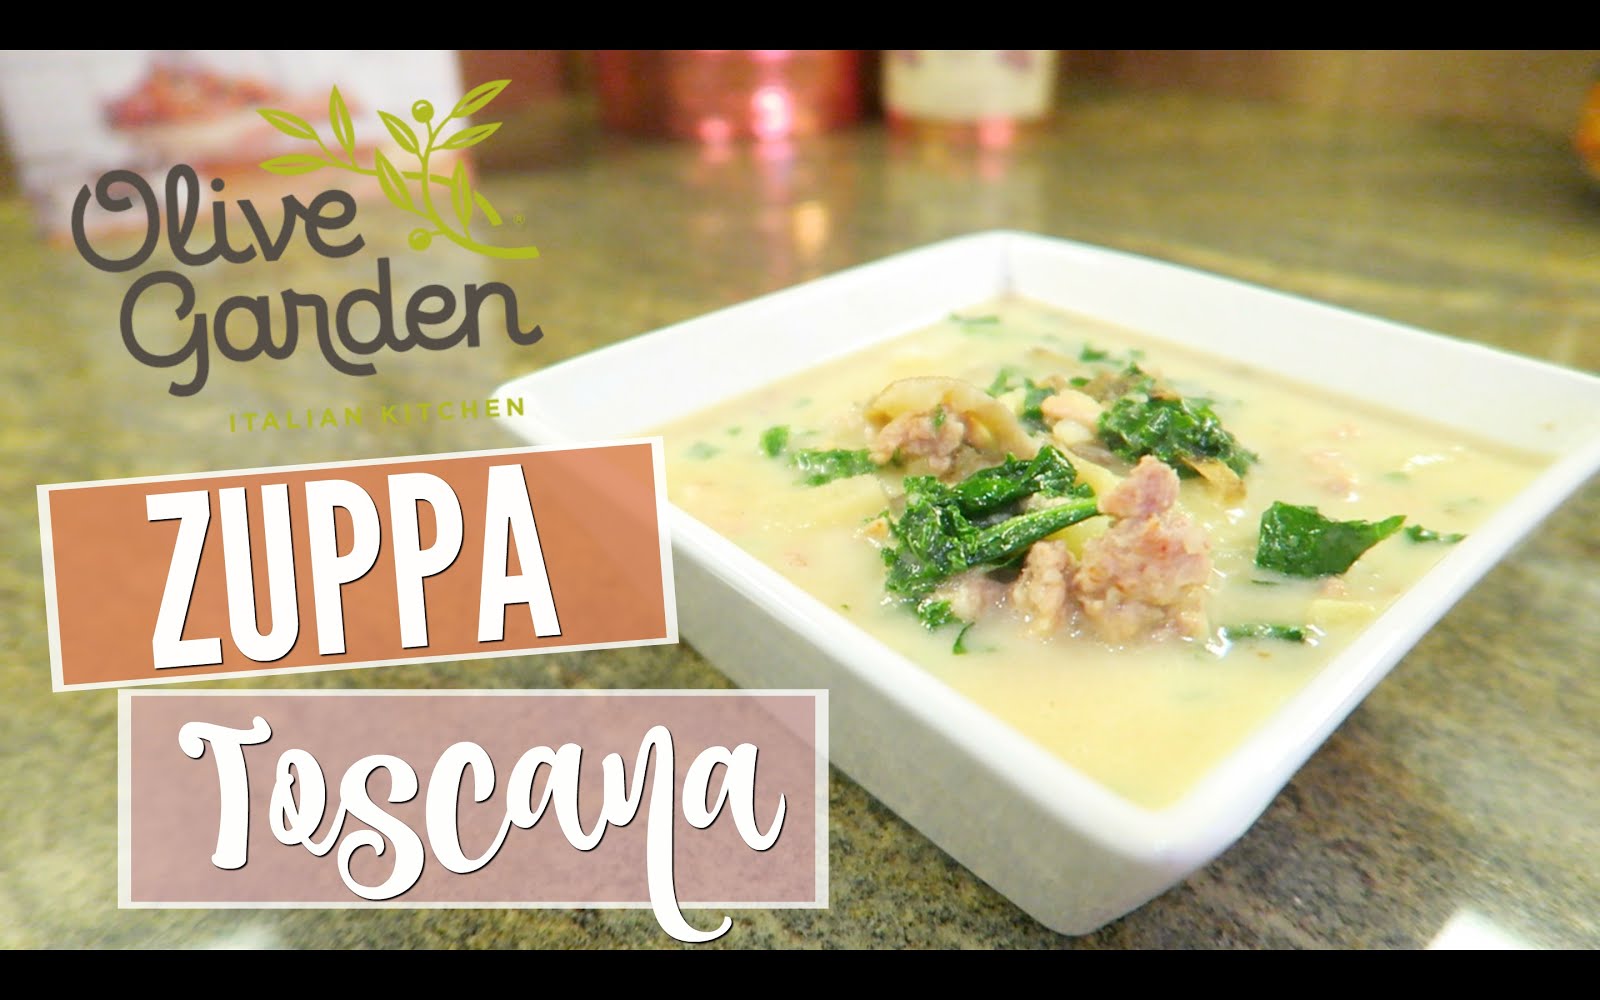 SAM SCHUERMAN: Copycat Olive Garden Zuppa Toscana Recipe